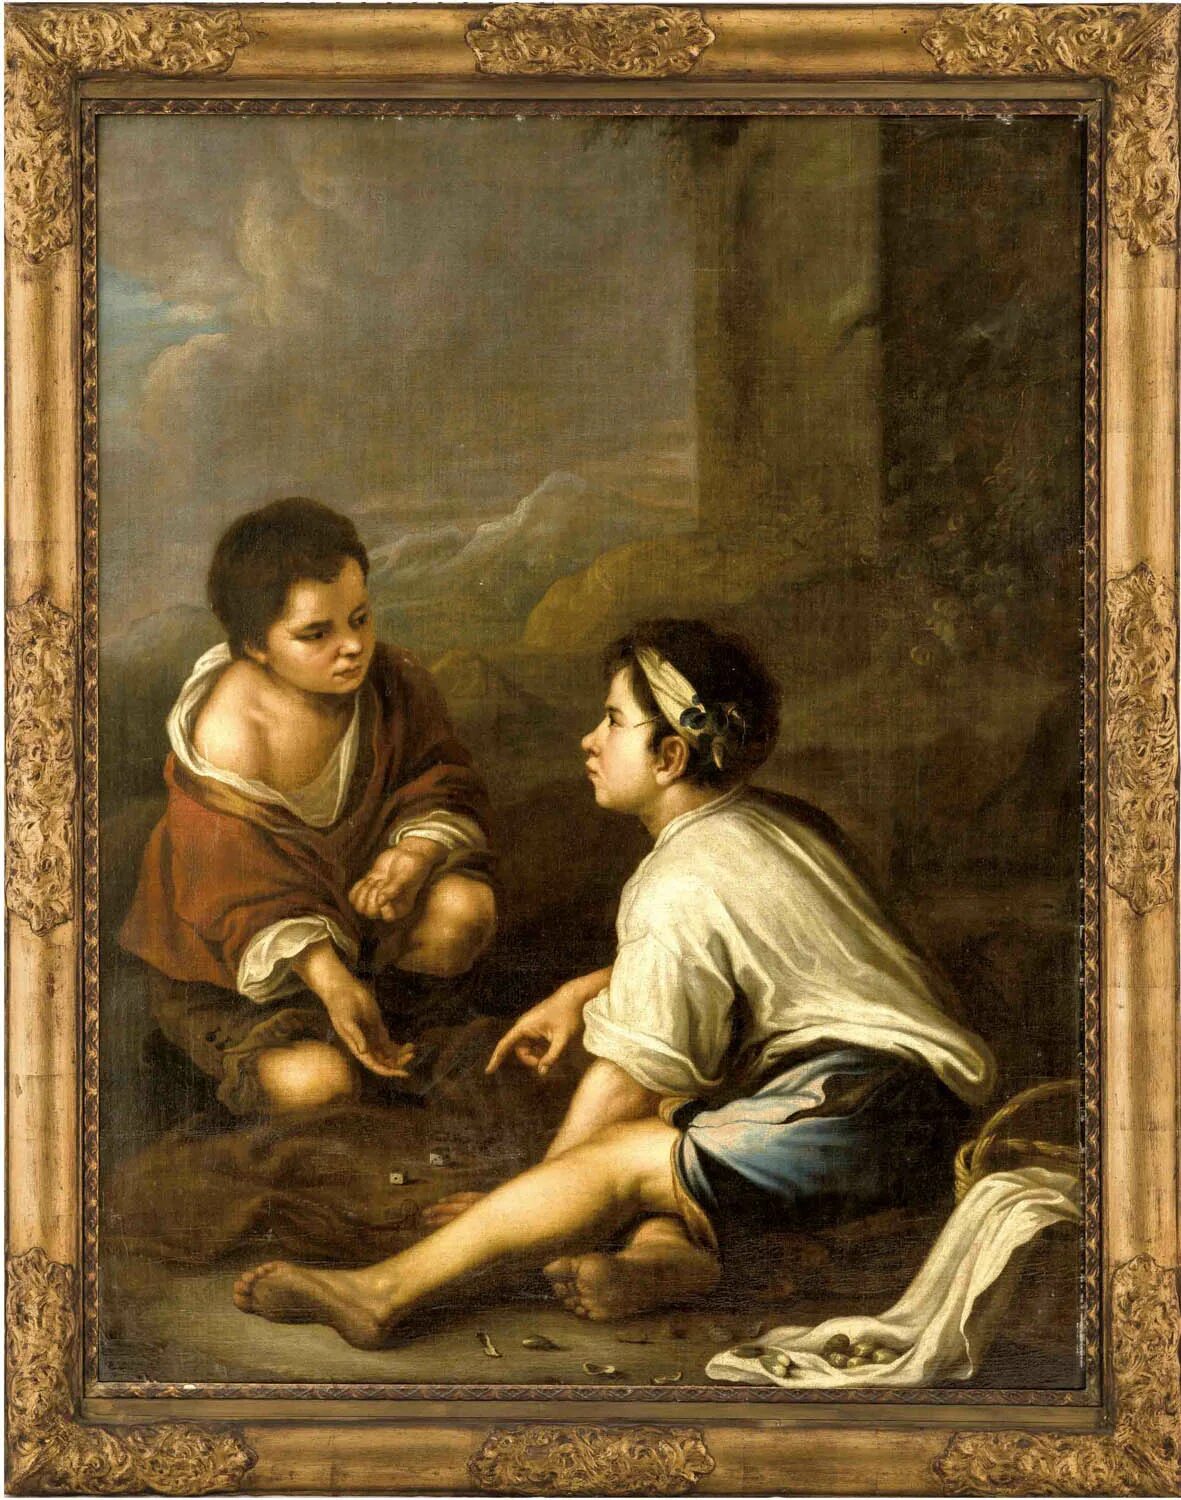 Бартоломе Эстебан Мурильо. Бартоломео Эстебан Мурильо (1618—1682). Бартоломе Эстебана Мурильо (1618 – 1682). Бартоломе Эстебан Мурильо Барокко.